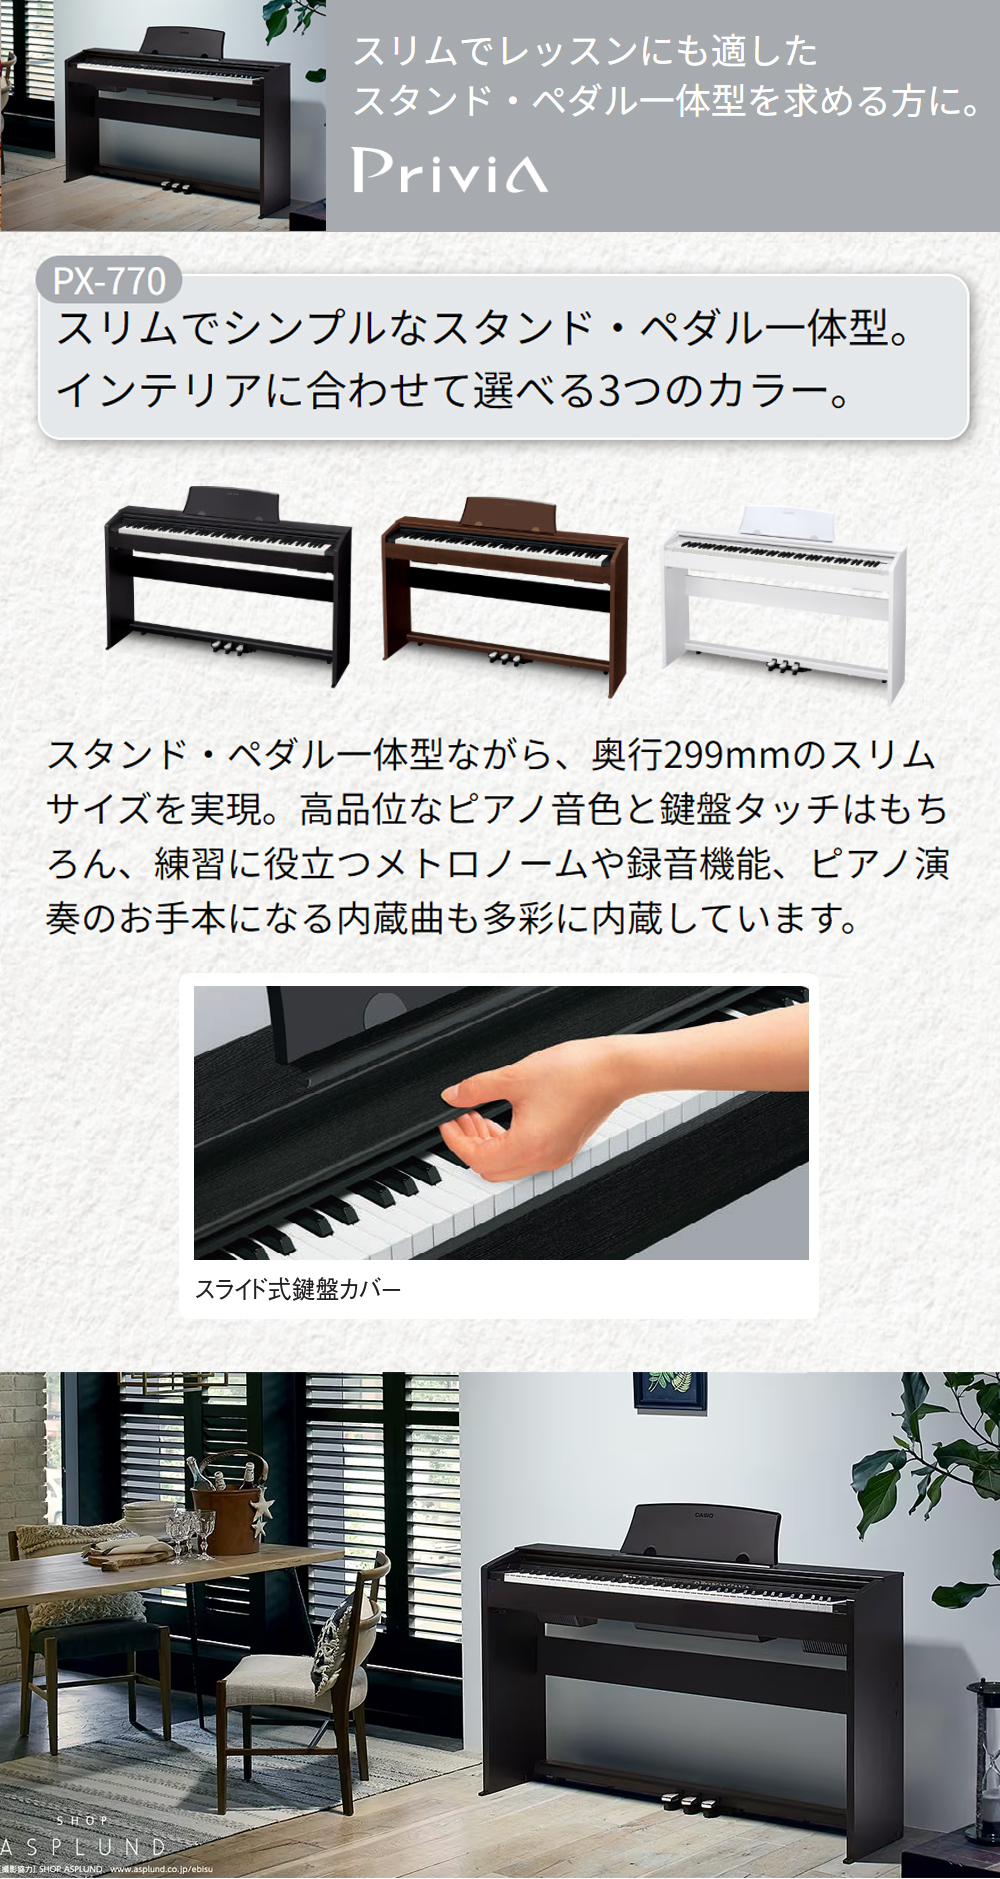 CASIO PX-770 ブラック 電子ピアノ 88鍵盤 ヘッドホン・高低自在椅子 